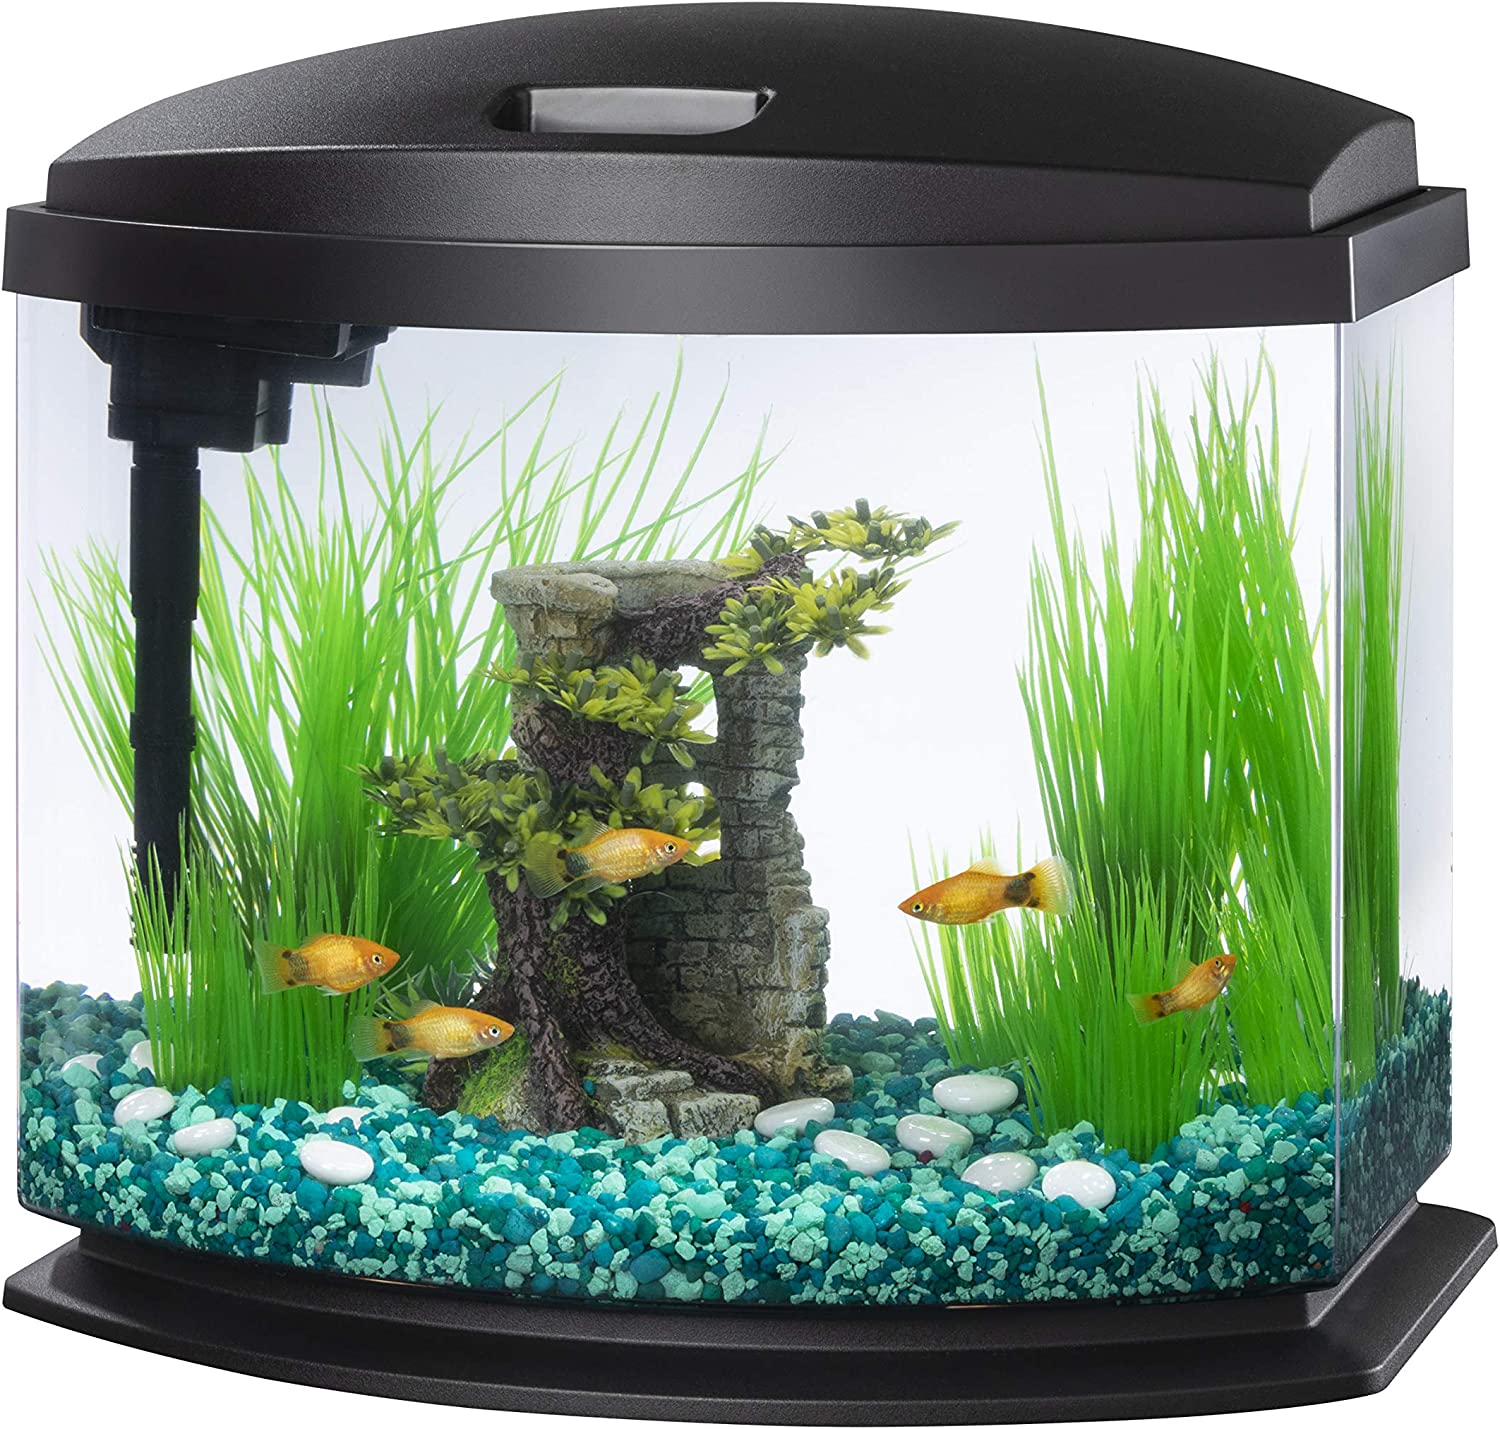  Tetra Glass Aquarium 29 Gallons, Rectangular Fish